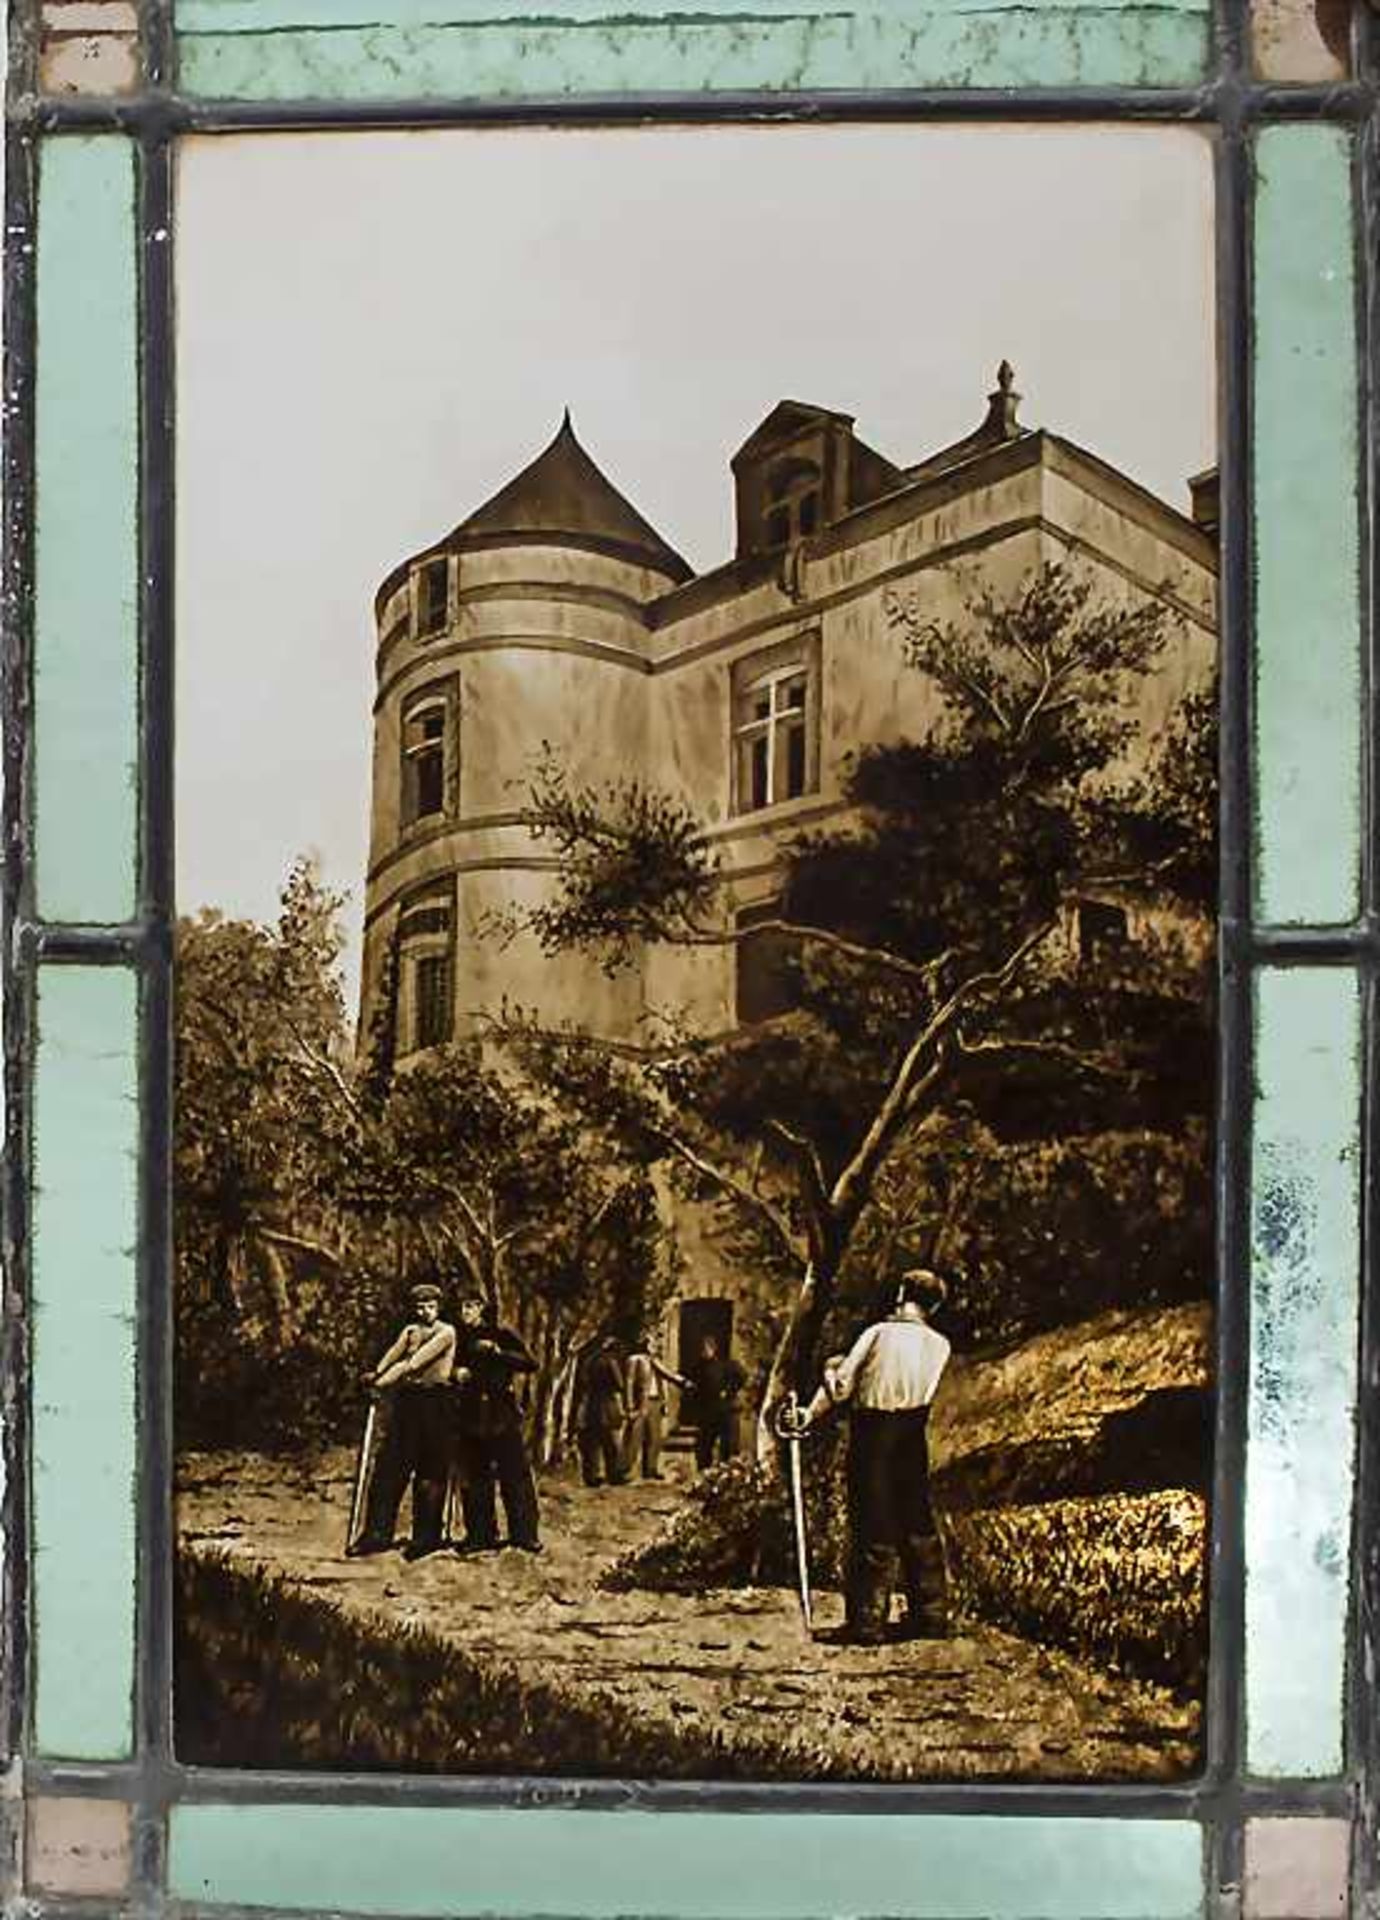 Burschenschaft-Bleiglasfenster / Fraternity lead-glass windows, deutsch, um 1900